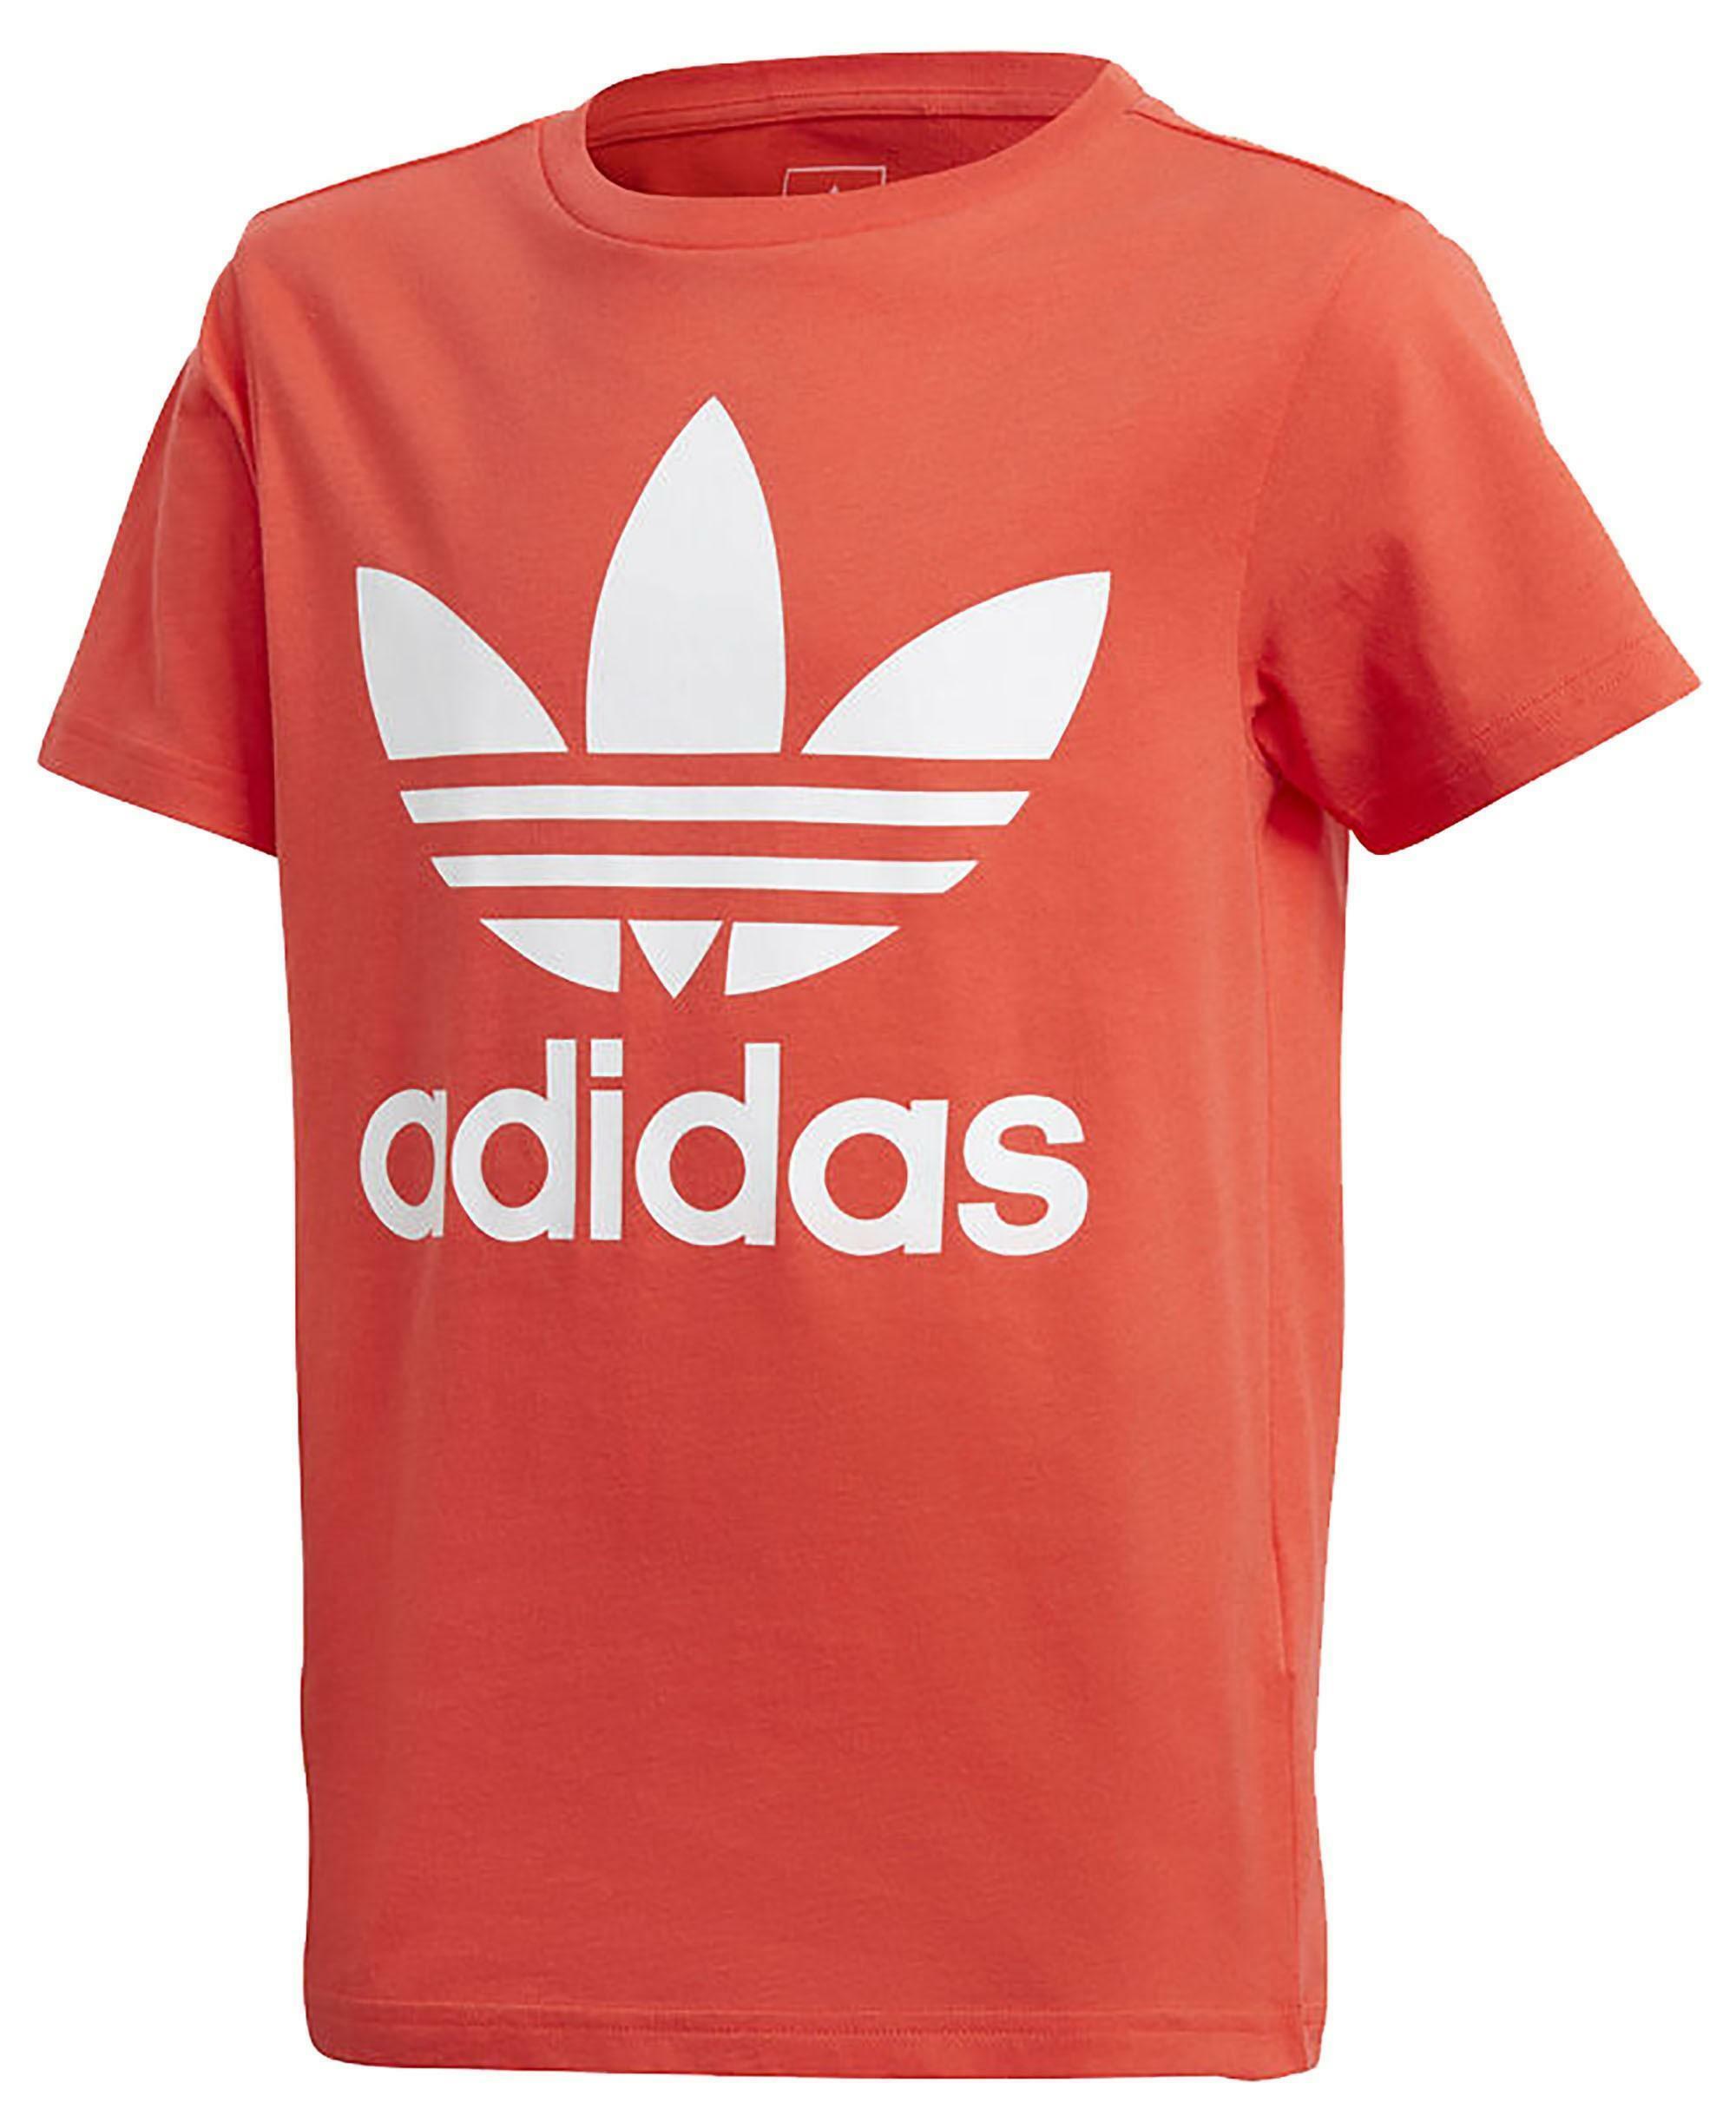 adidas originals adidas j trf t-shirt bambino/a rossa dh2474